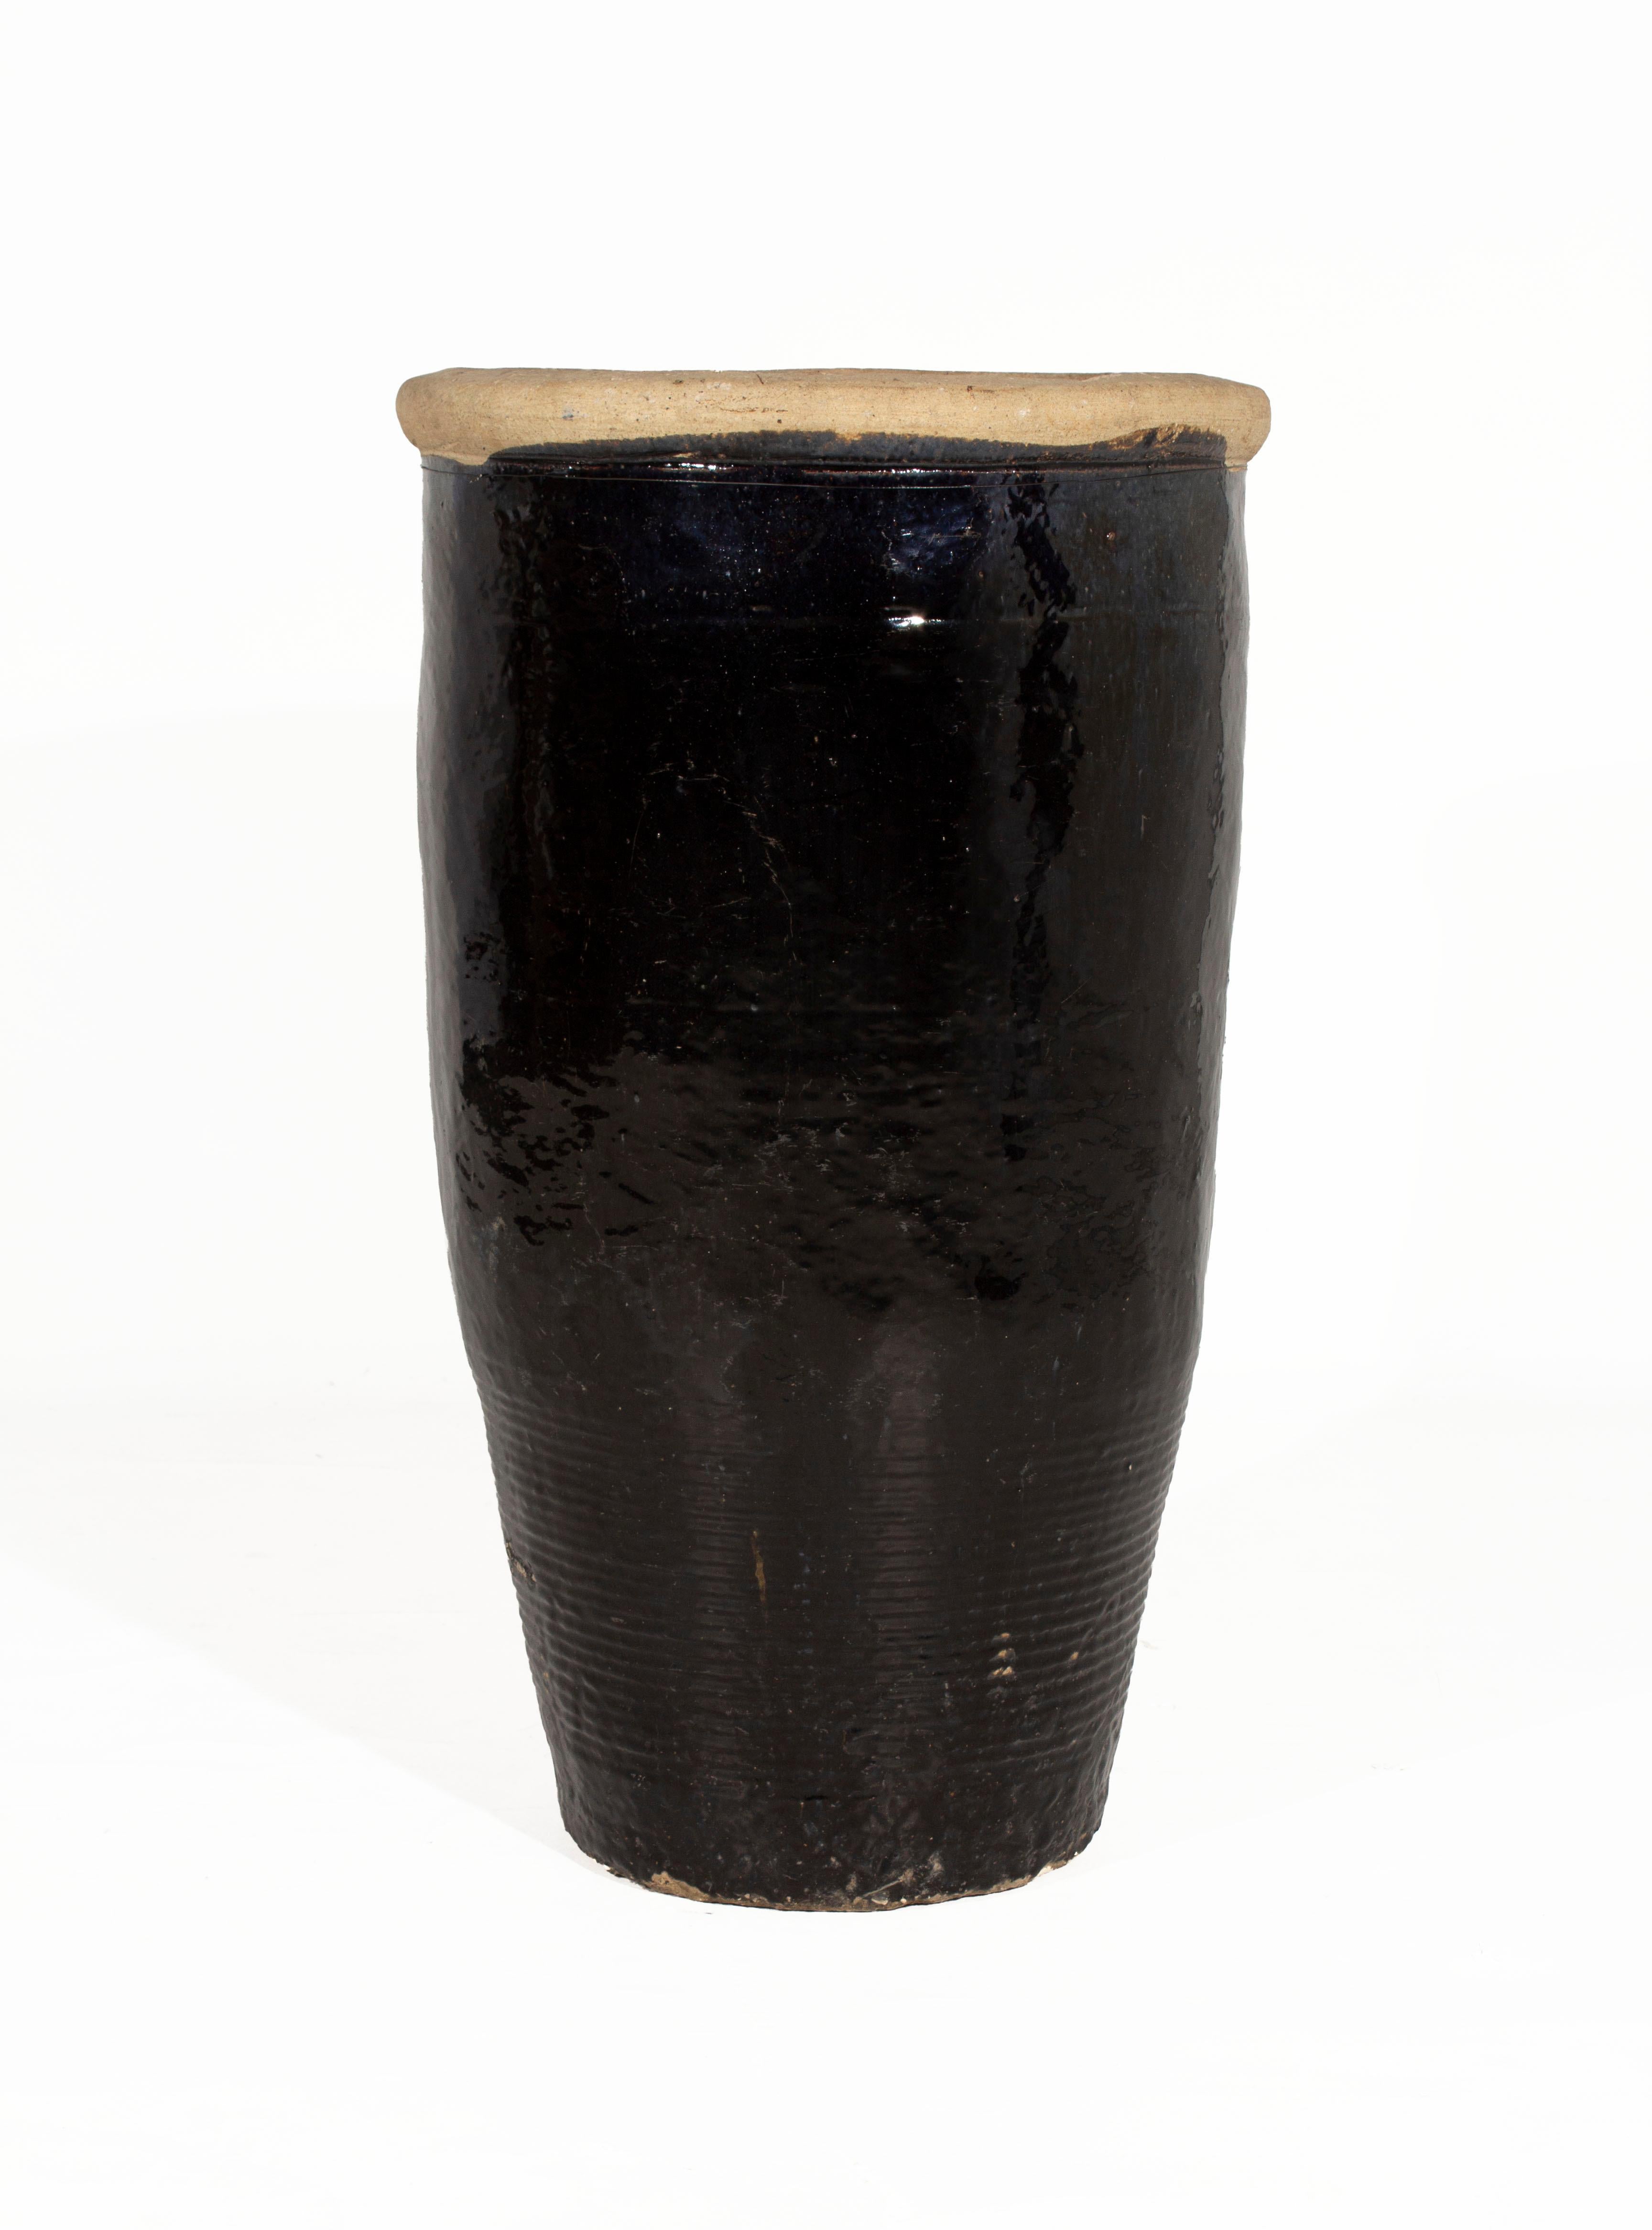 Vintage South Asian Storage Jar / Topf Keramik Dekor.

In meiner organischen, zeitgenössischen, Vintage- und Mid-Century-Modern-Ästhetik.

Beschafft von Brendan Bass aus Belgien. Einzigartig